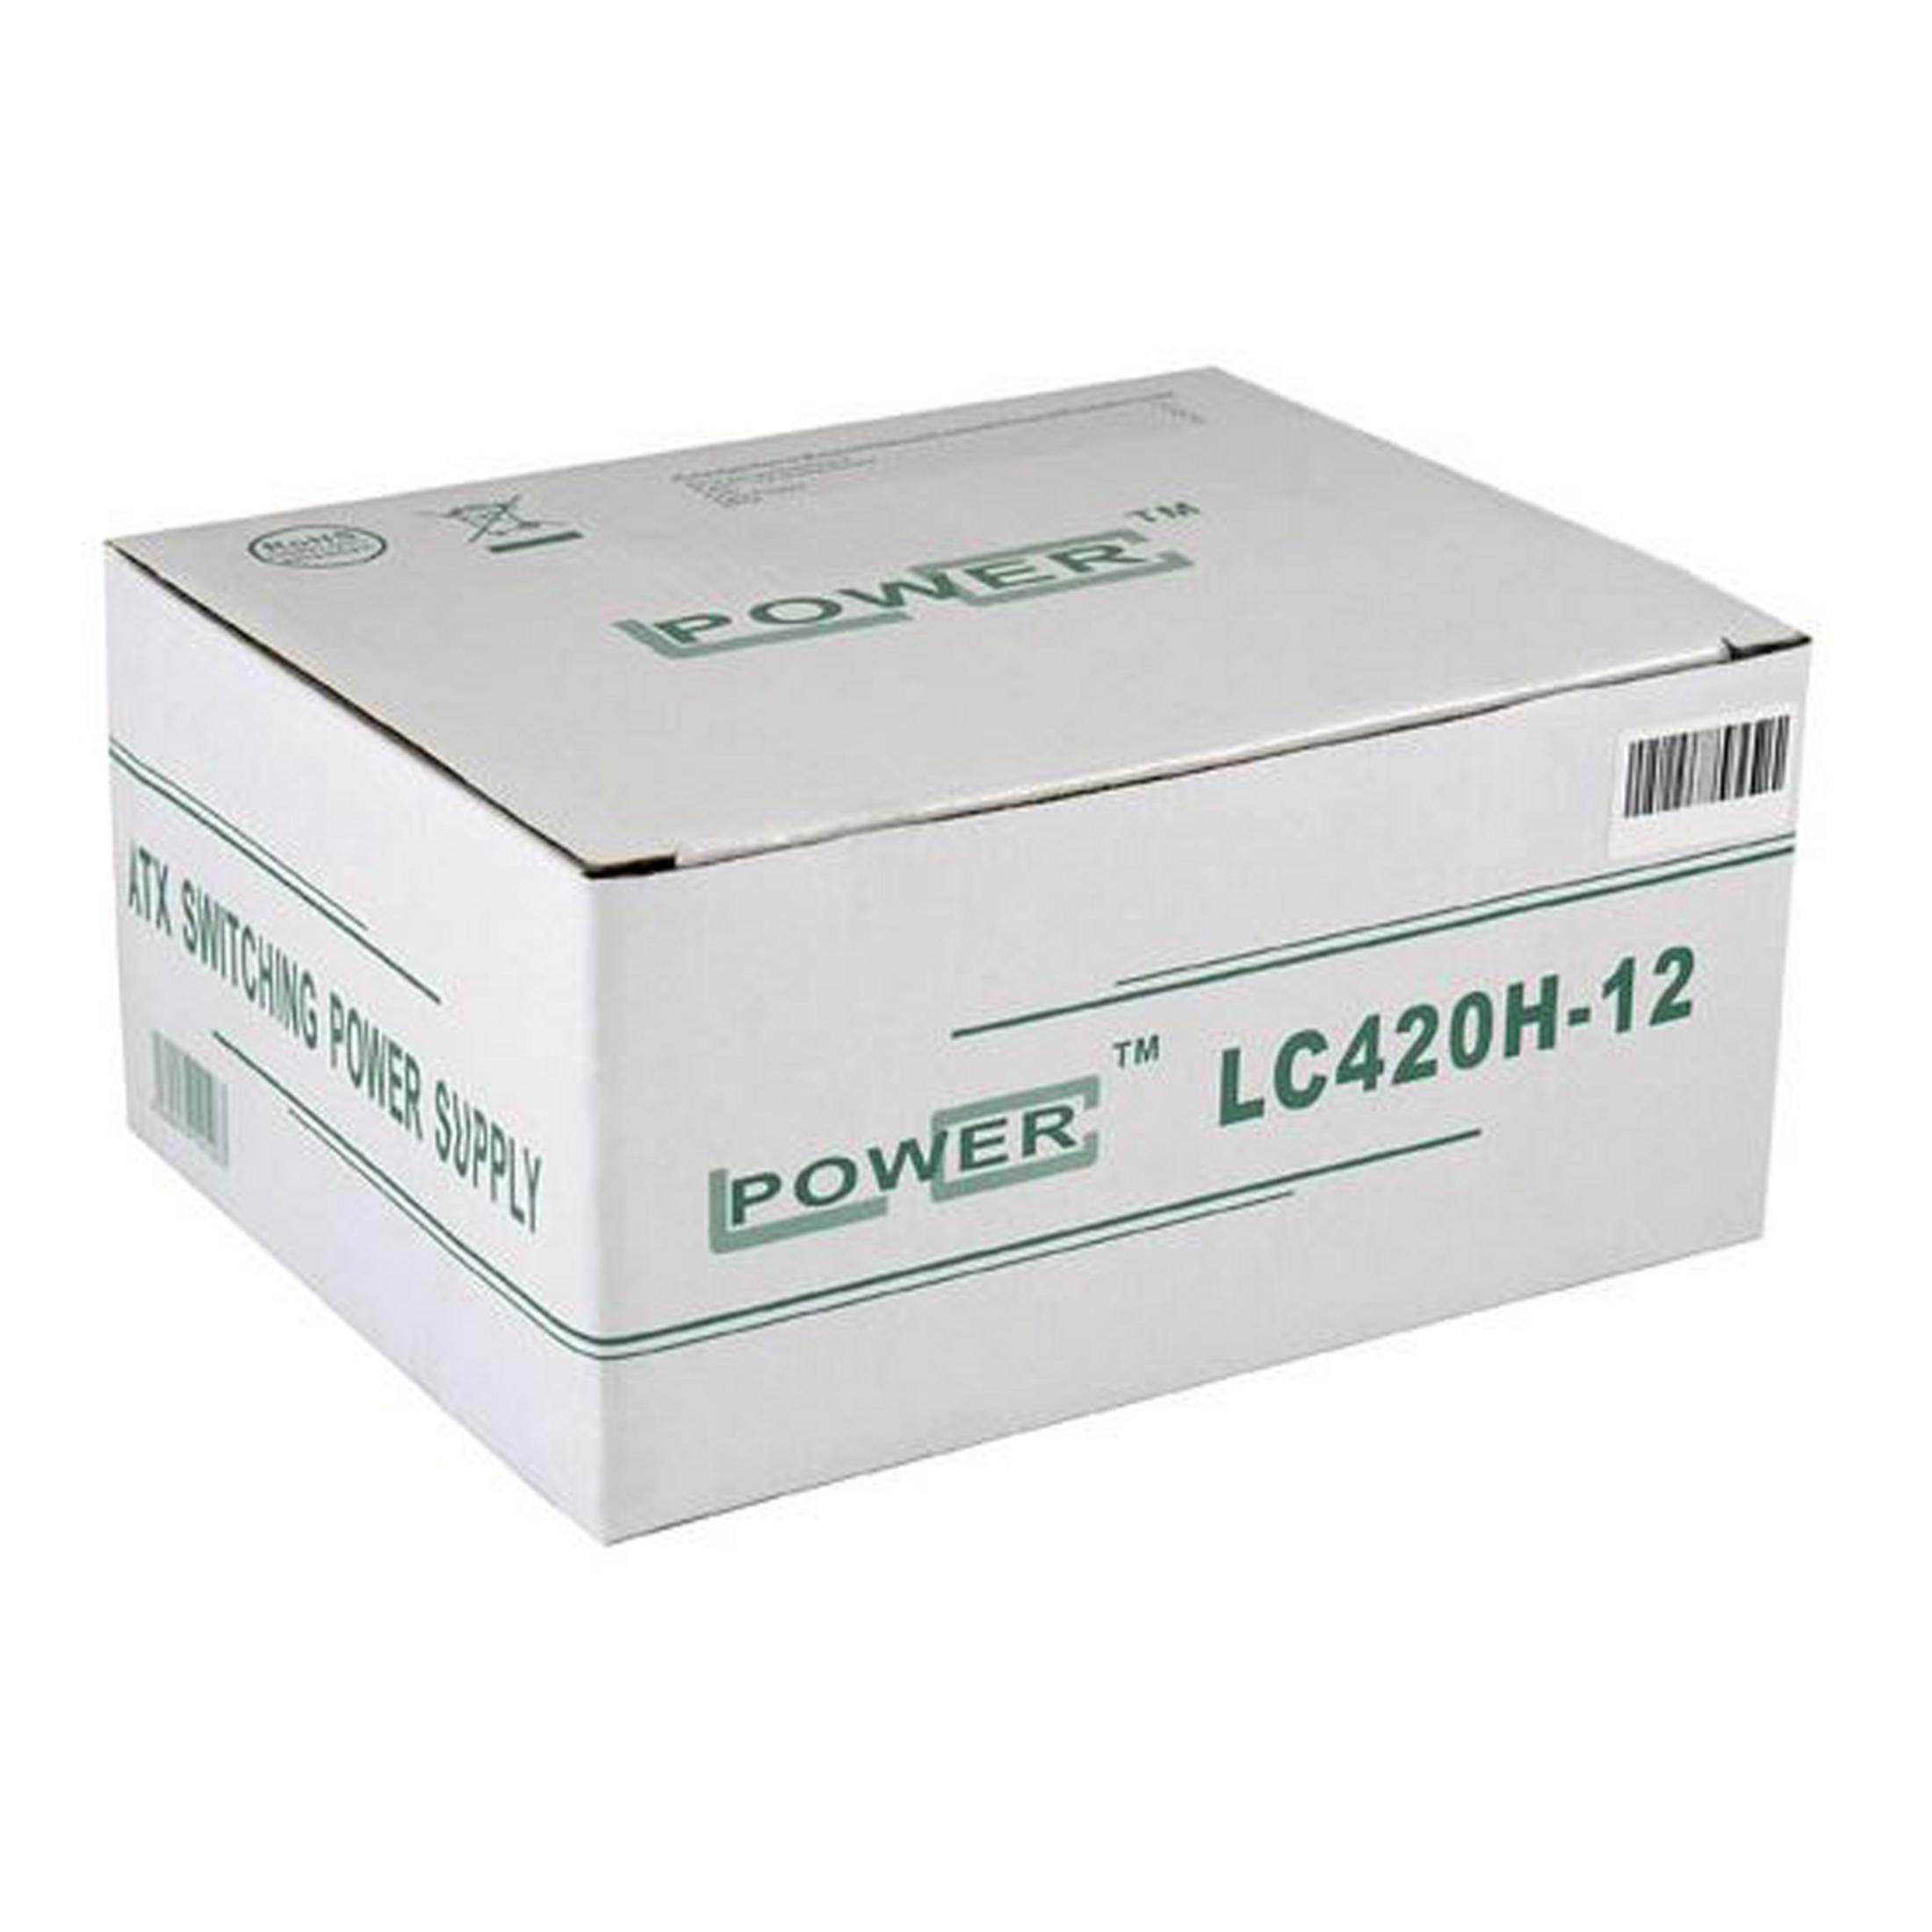 LC POWER LC420H-12 V1.3 420 Watt PC Netzteil